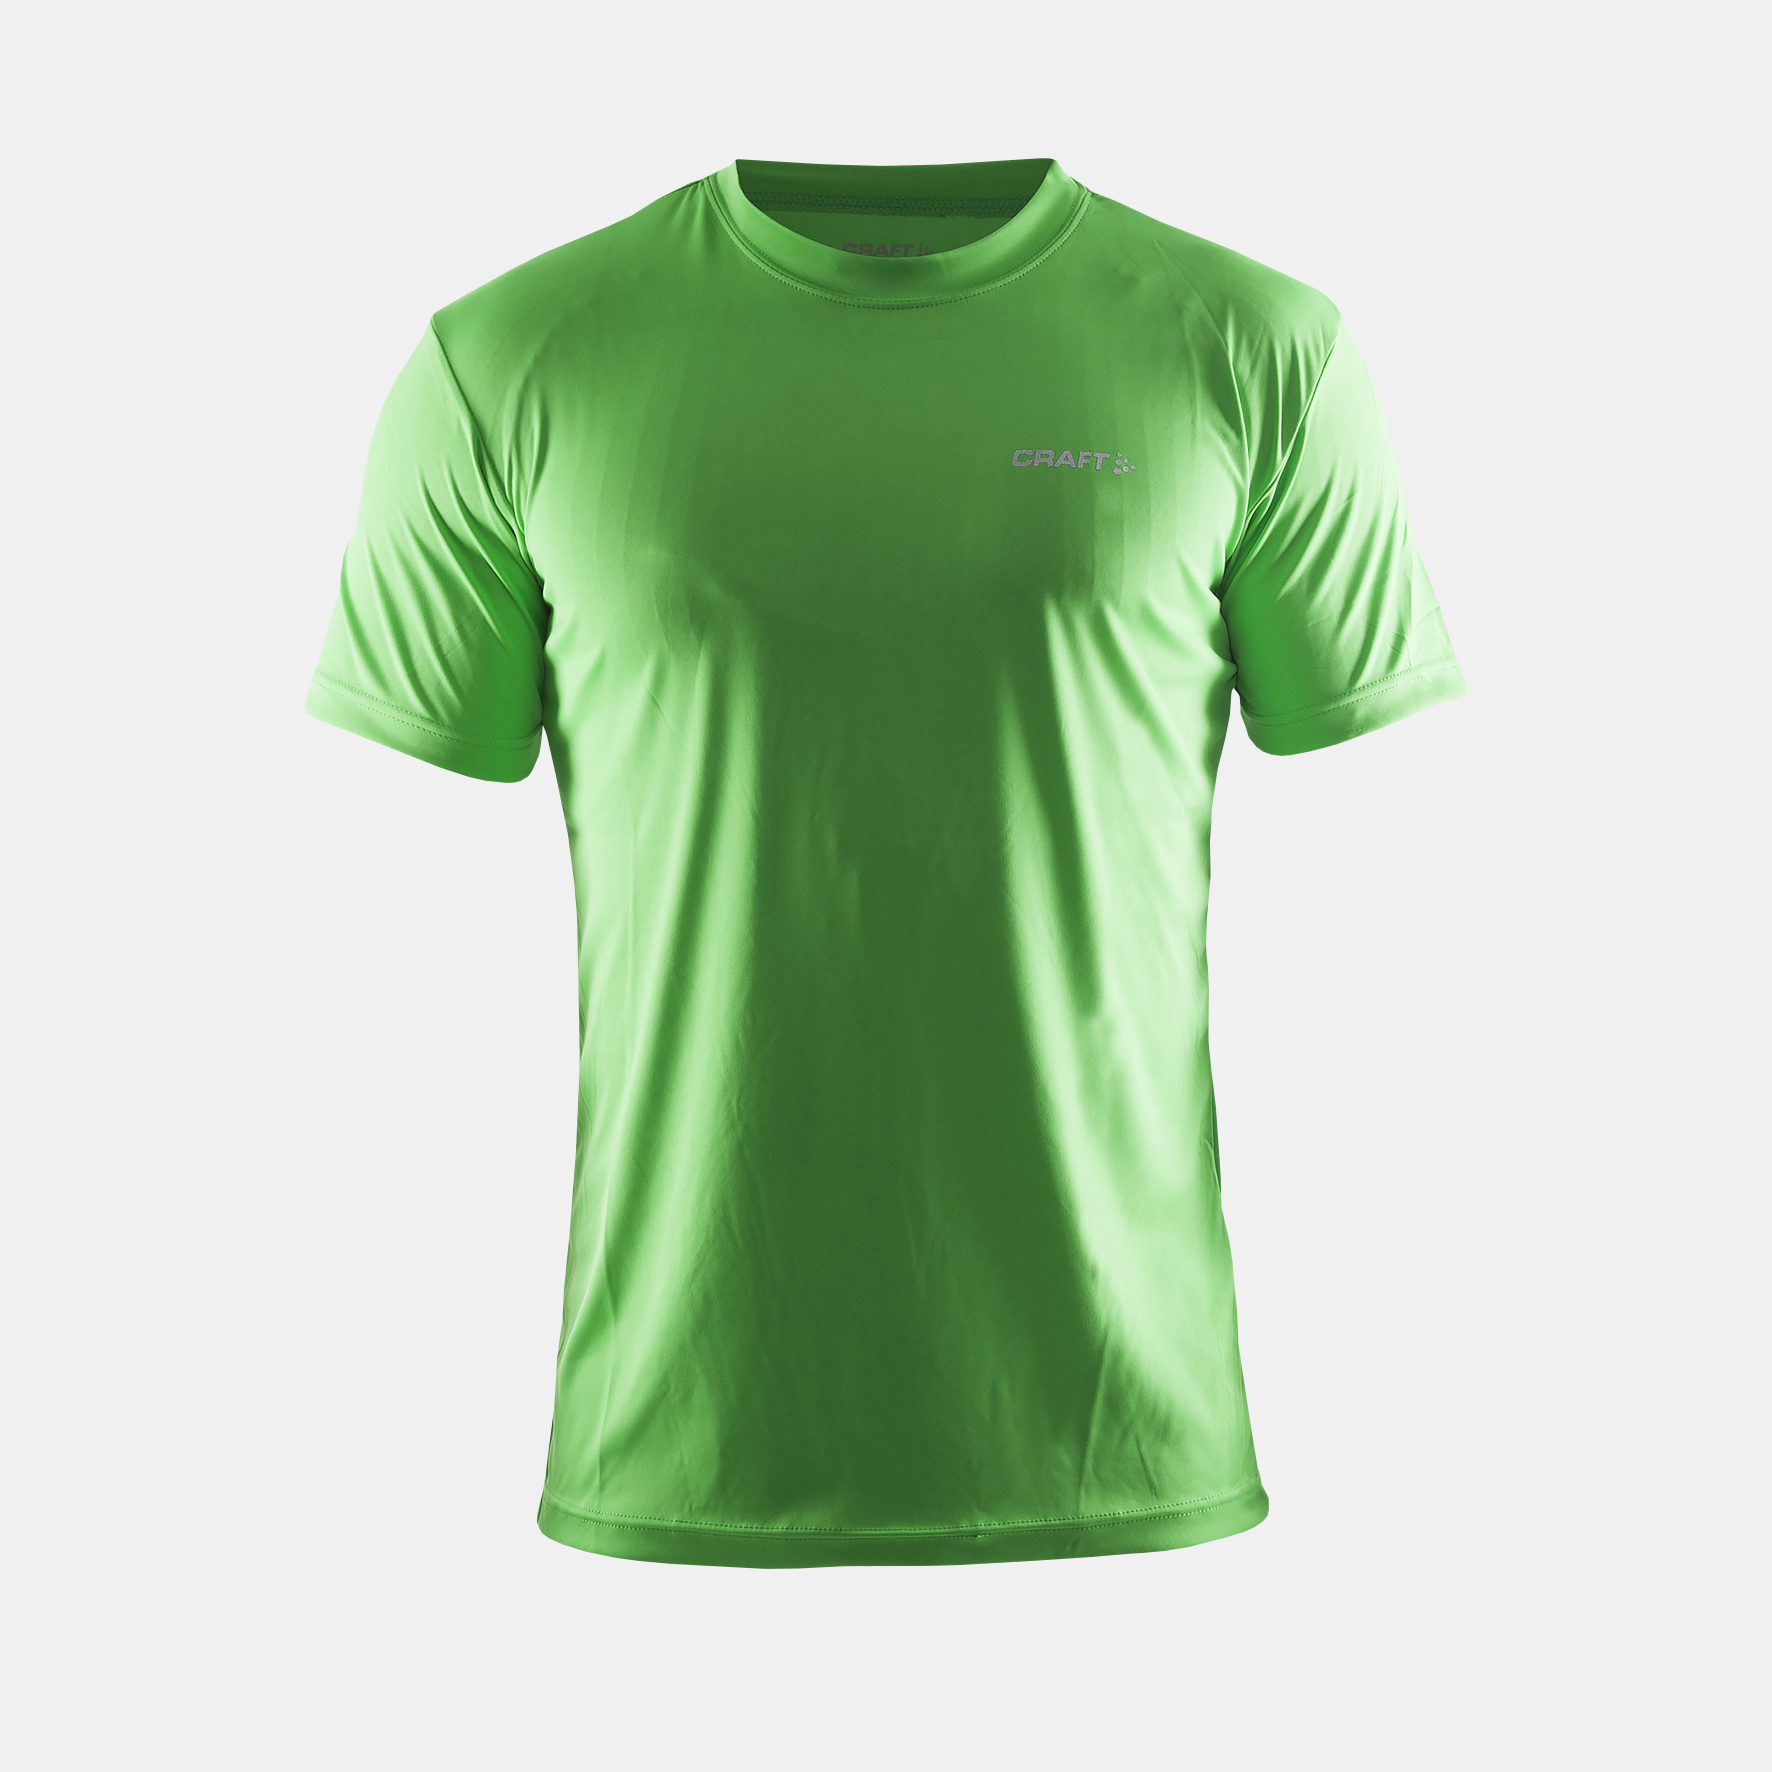 Футболки дешево от производителя. Joma Беговая майка зеленая 101928.117. Зеленая футболка мужская. Салатовая футболка мужская. Мужские футболки зеленого цвета.